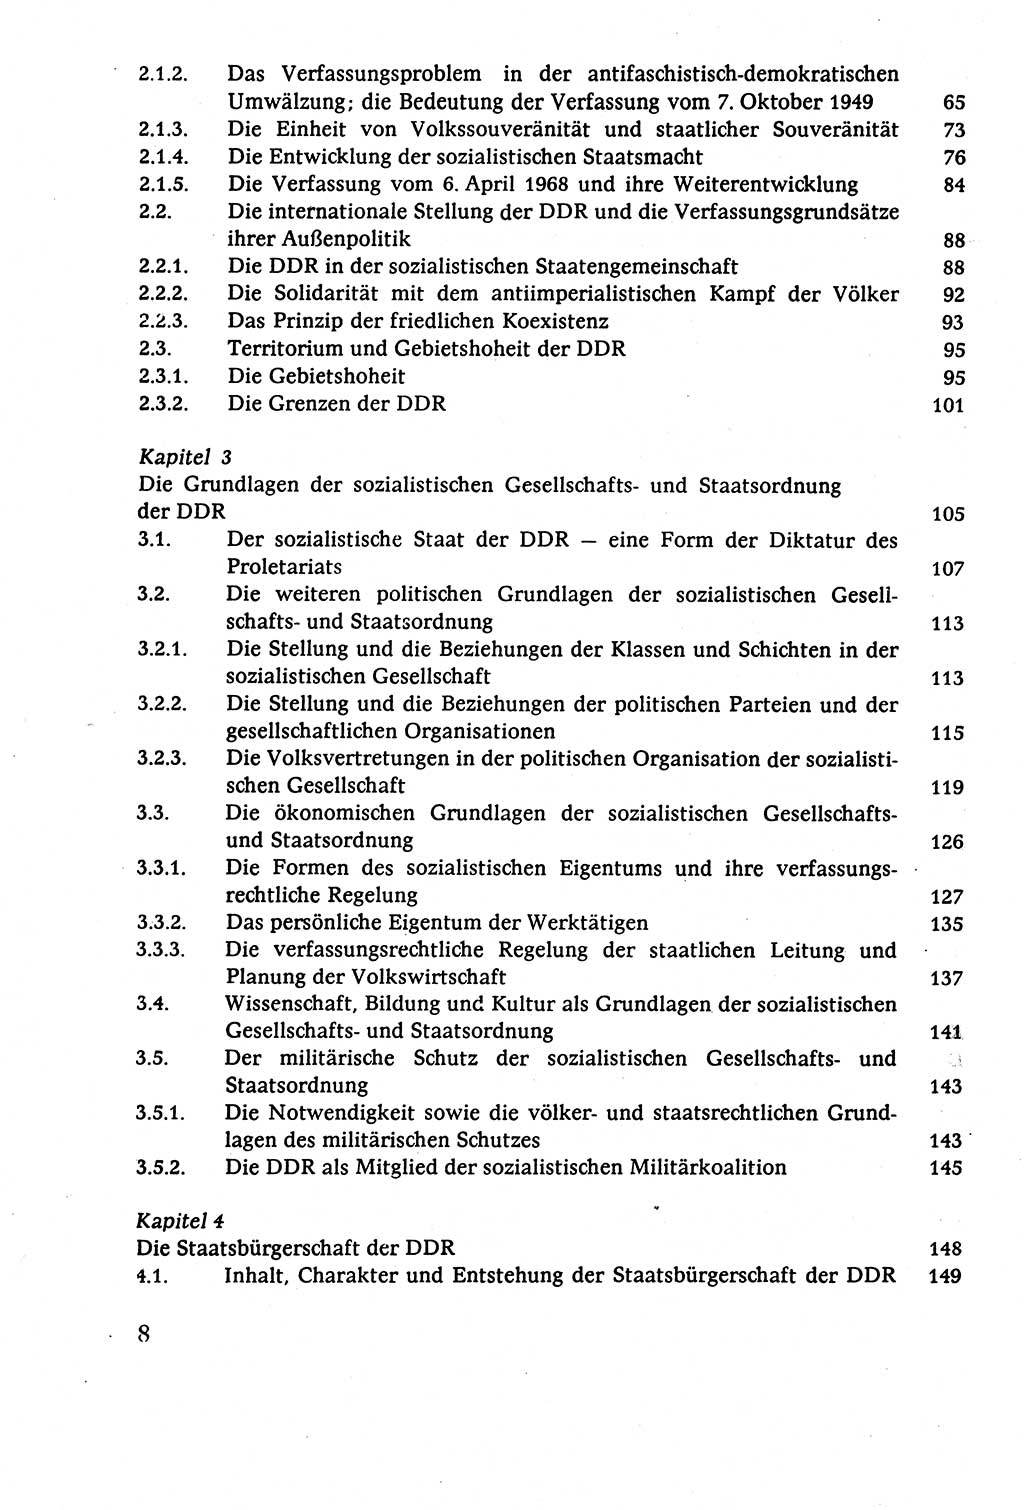 Staatsrecht der DDR (Deutsche Demokratische Republik), Lehrbuch 1977, Seite 8 (St.-R. DDR Lb. 1977, S. 8)